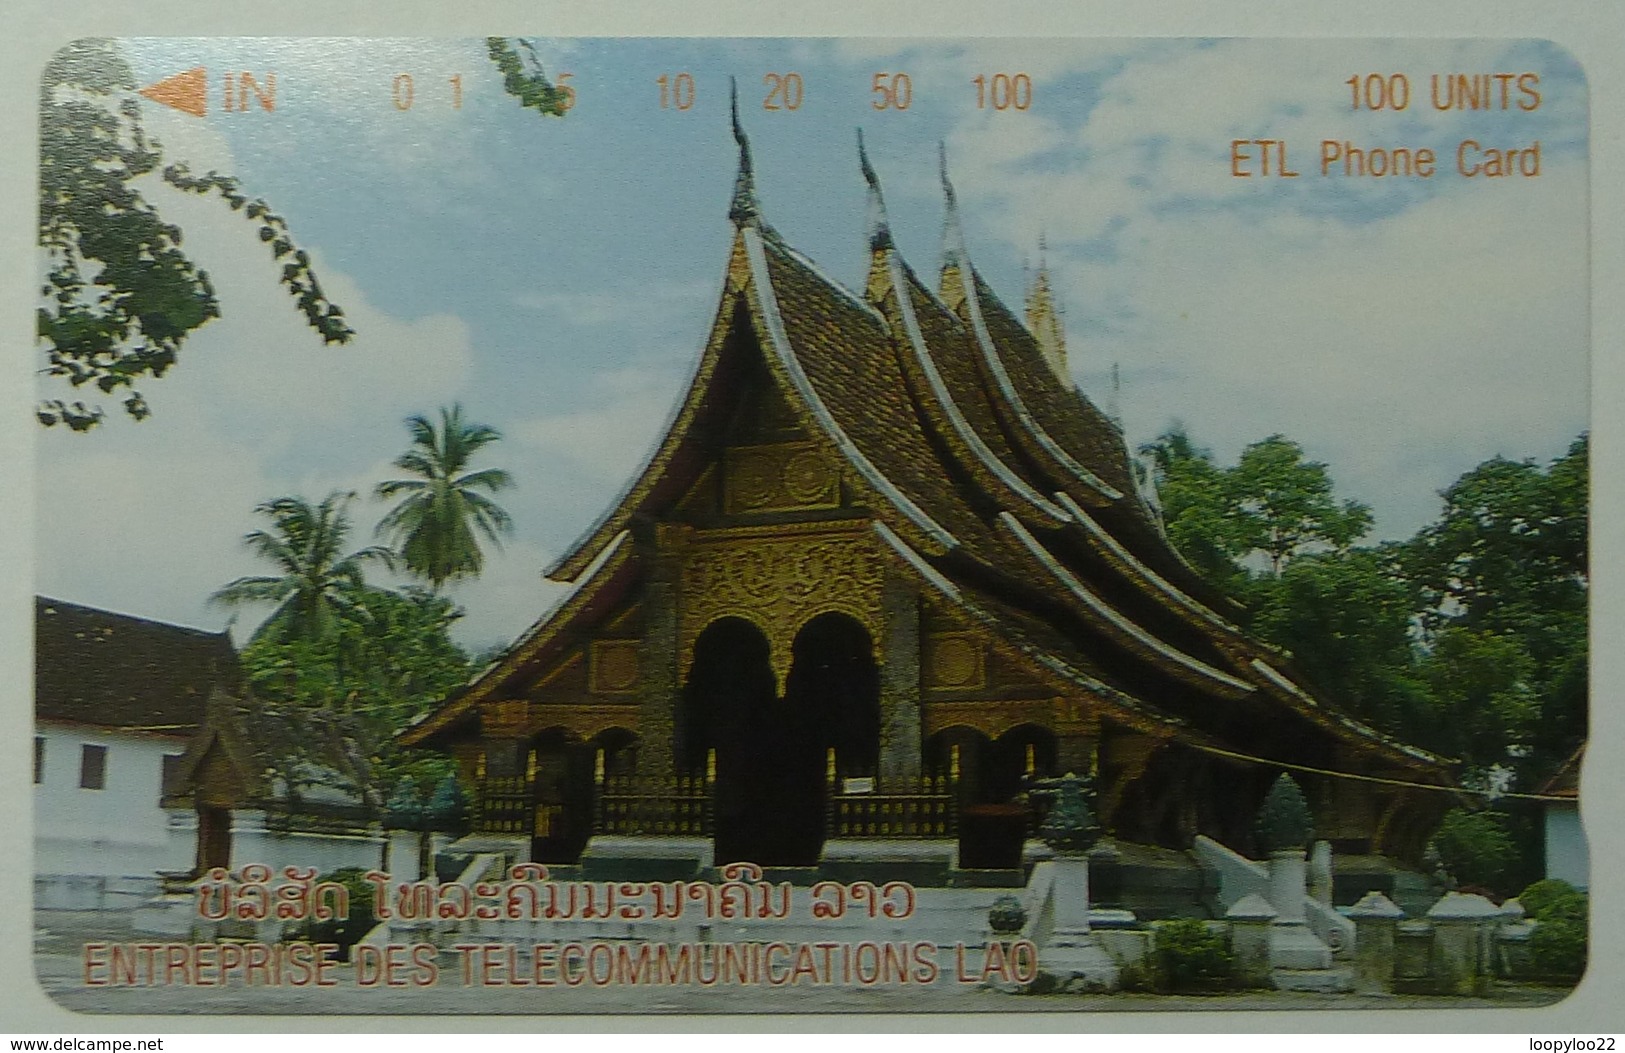 LAOS - Enterprise Des Telecommunications Lao - 100 Units - Mint - Laos